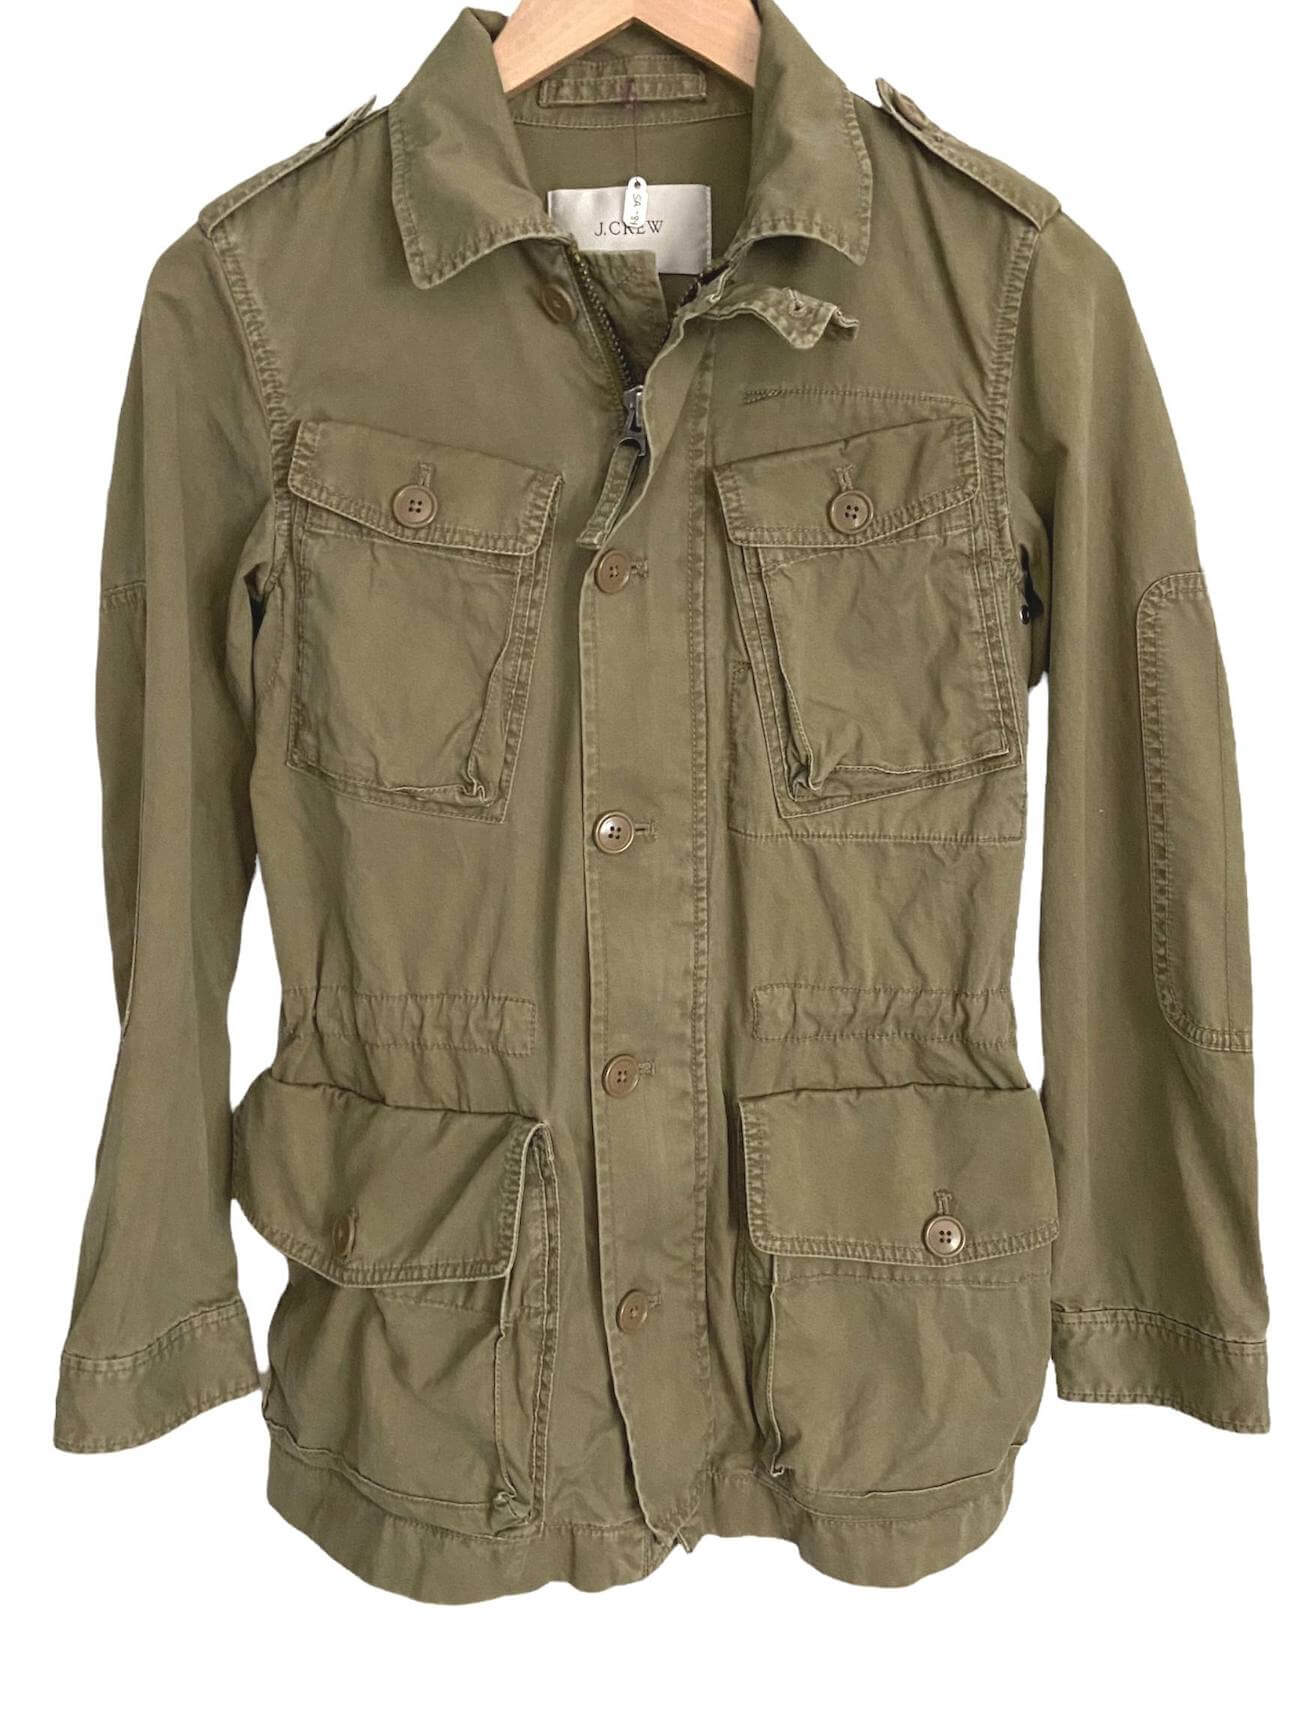 Olive Green Utility Jacket - Collared Jacket - Cropped Jacket - Lulus